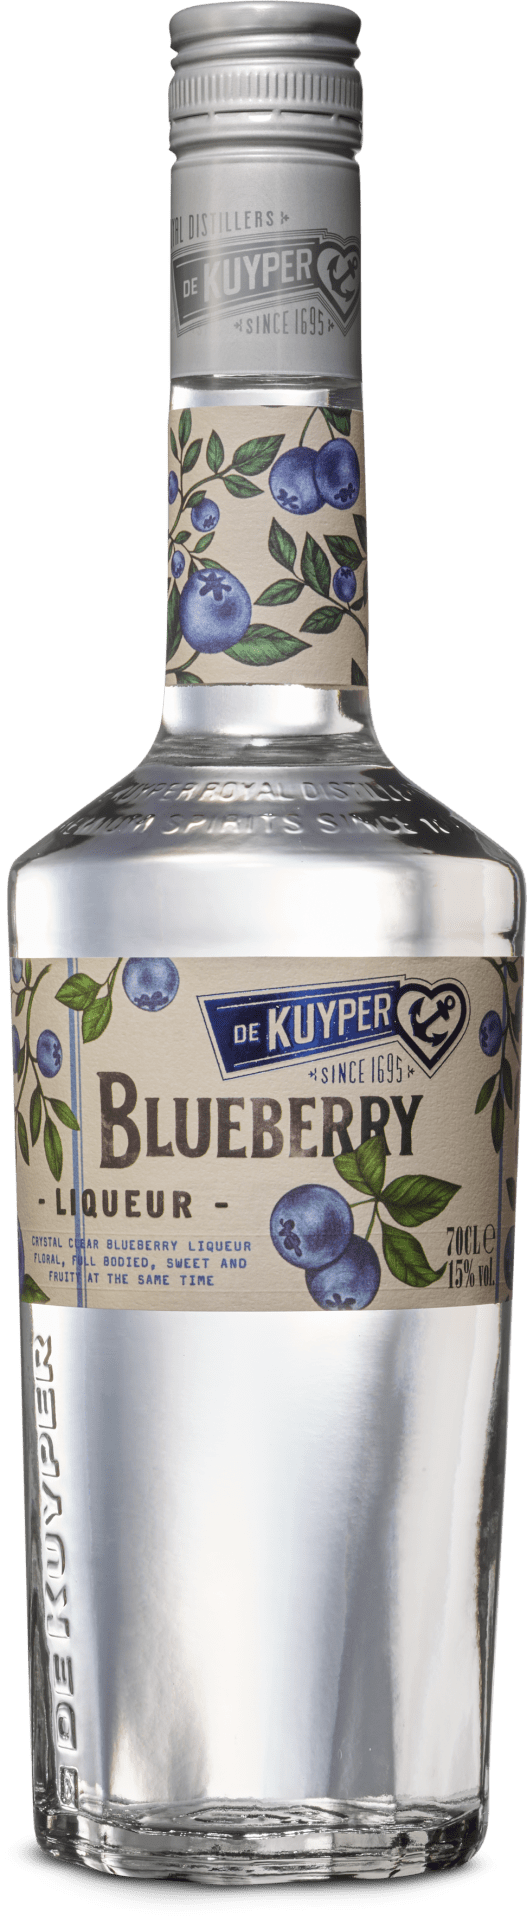 Blueberry Liqueur